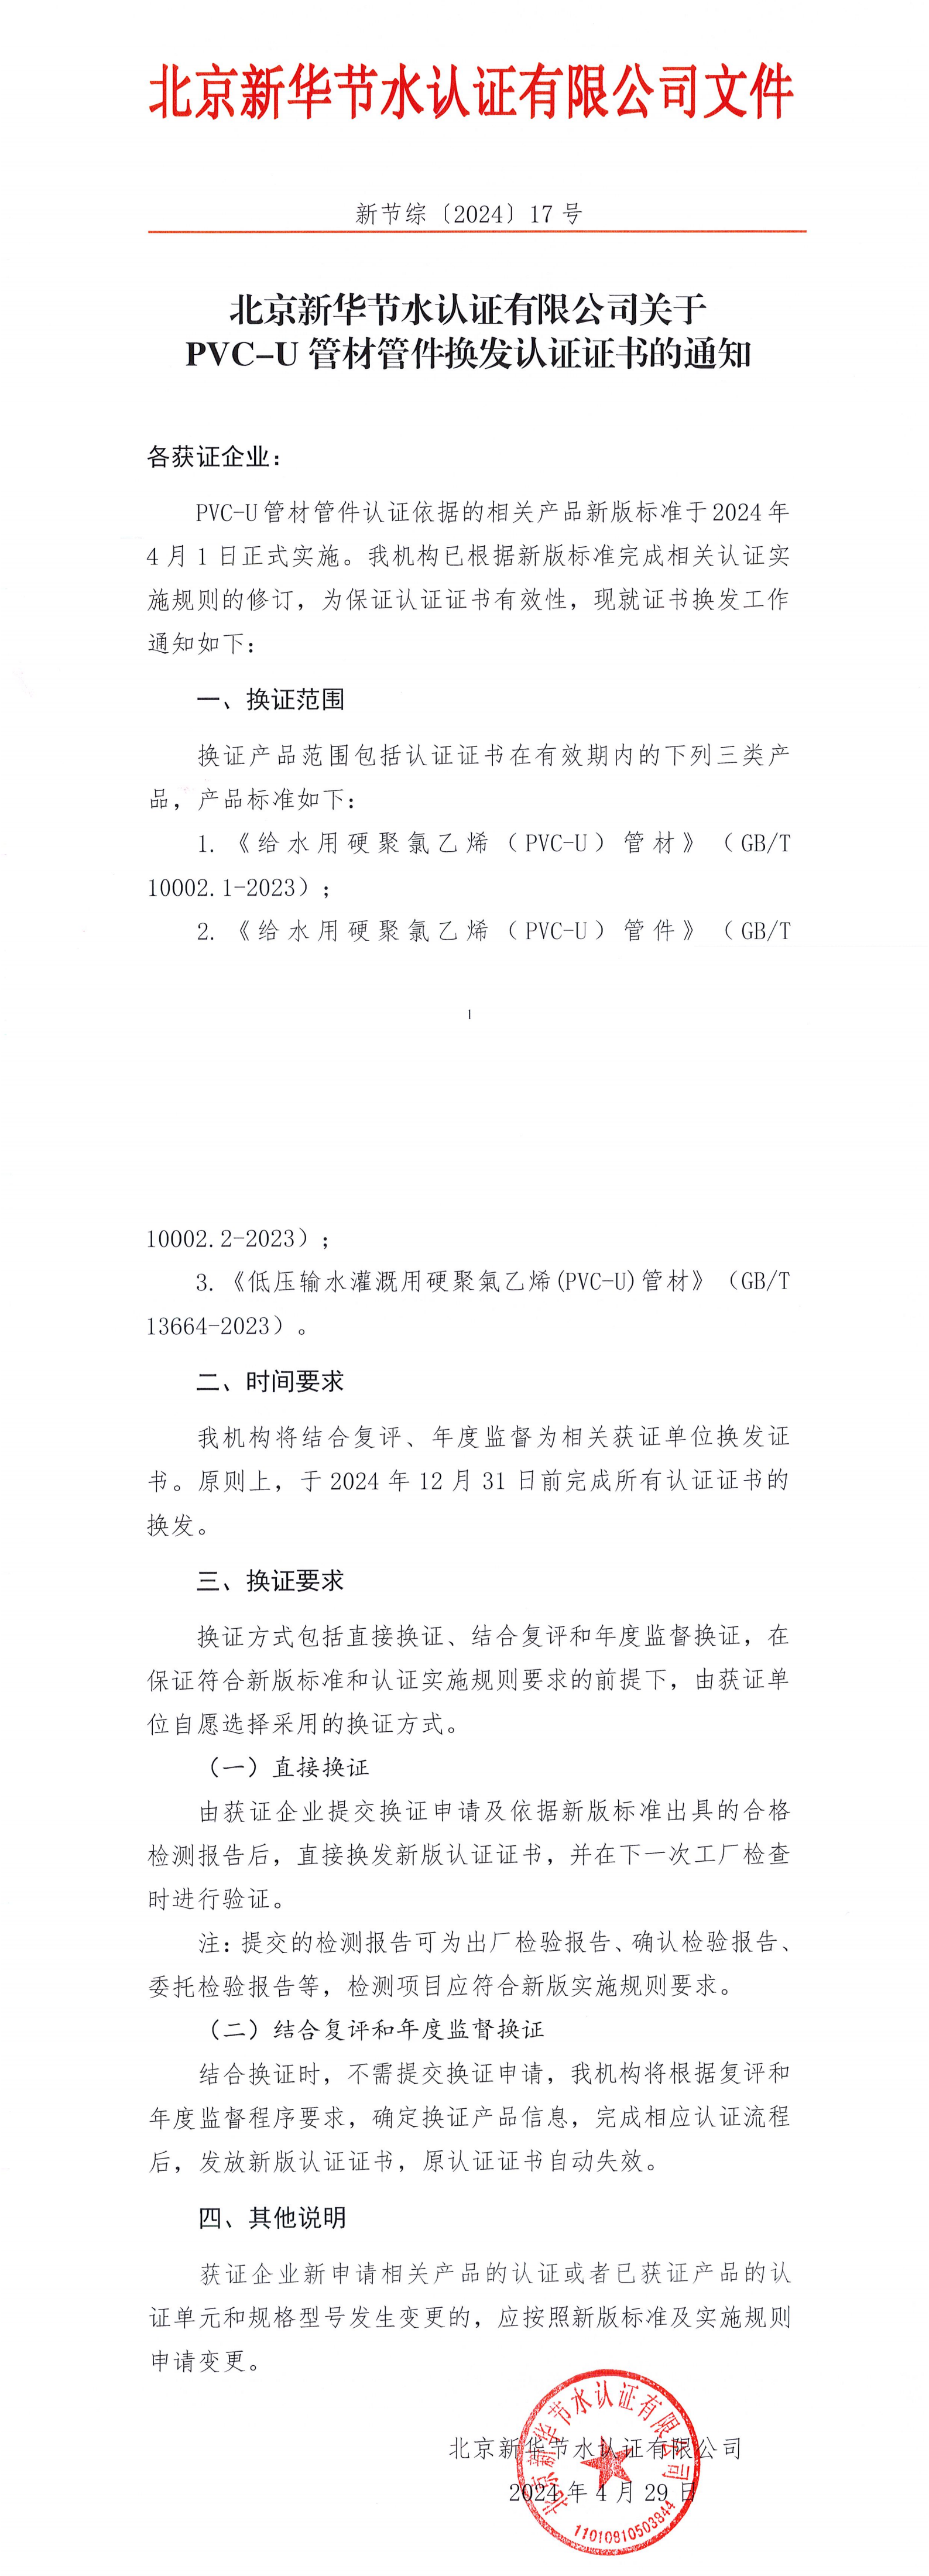 北京新华节水认证有限公司关于PVC-U管材管件换发认证证书的通知(2)_00.png